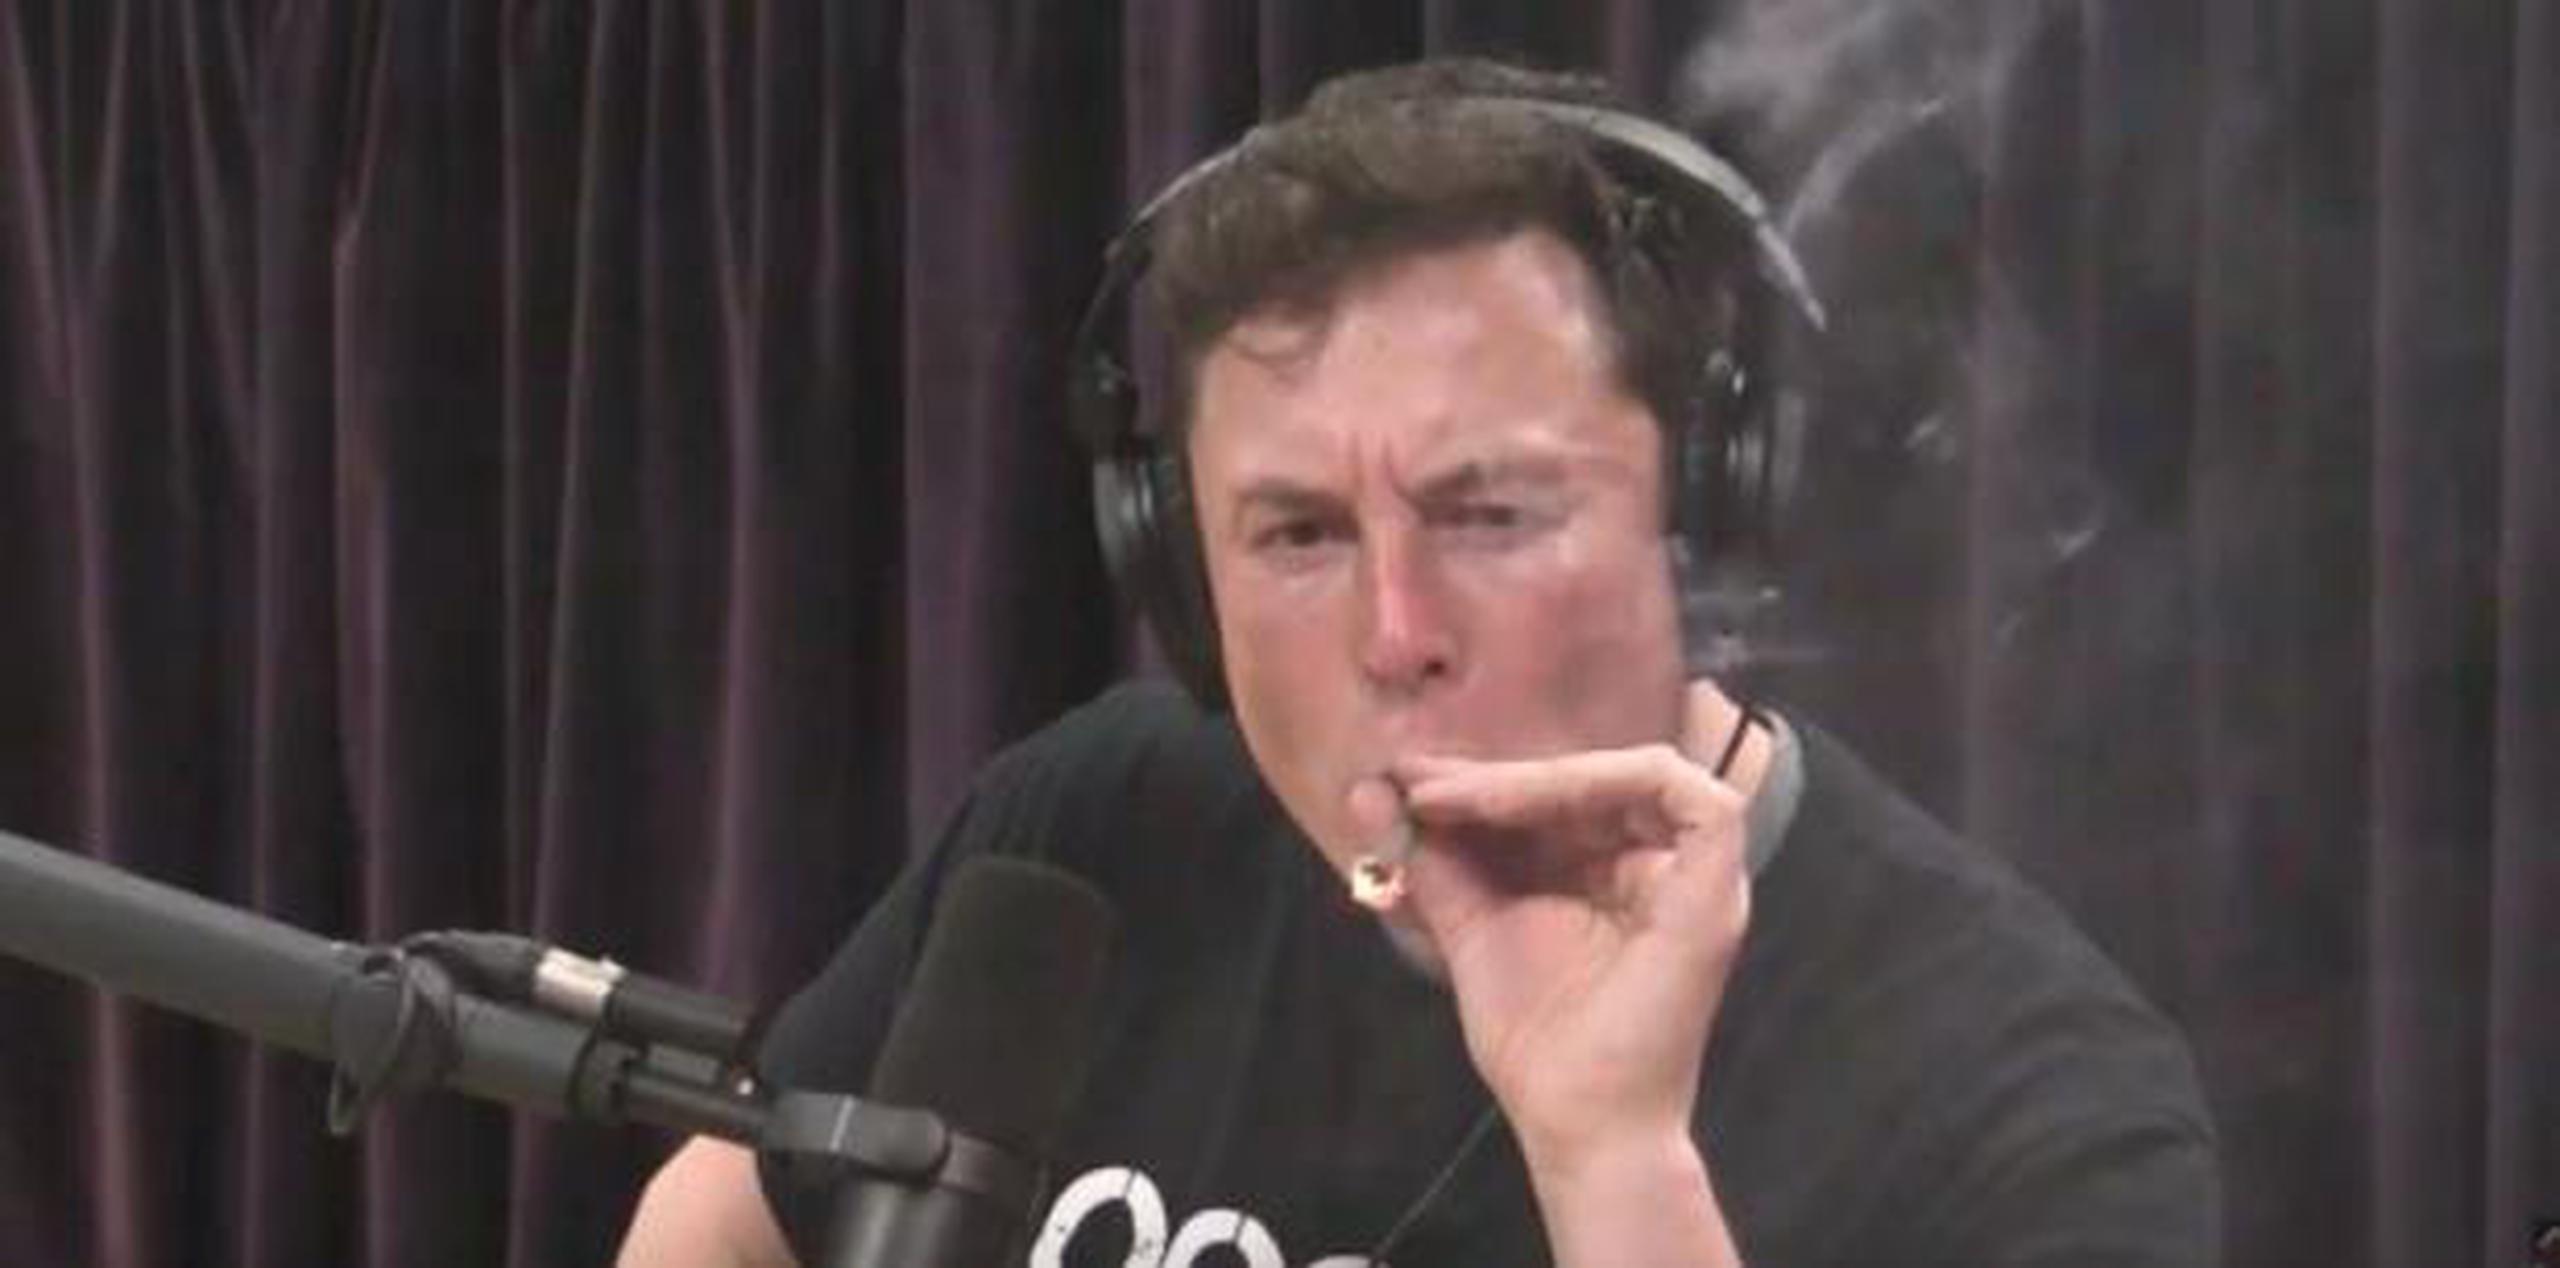 Elon Musk dijo que no notaba ningún efecto por la marihuana, que dice fumar raramente. (YouTube)